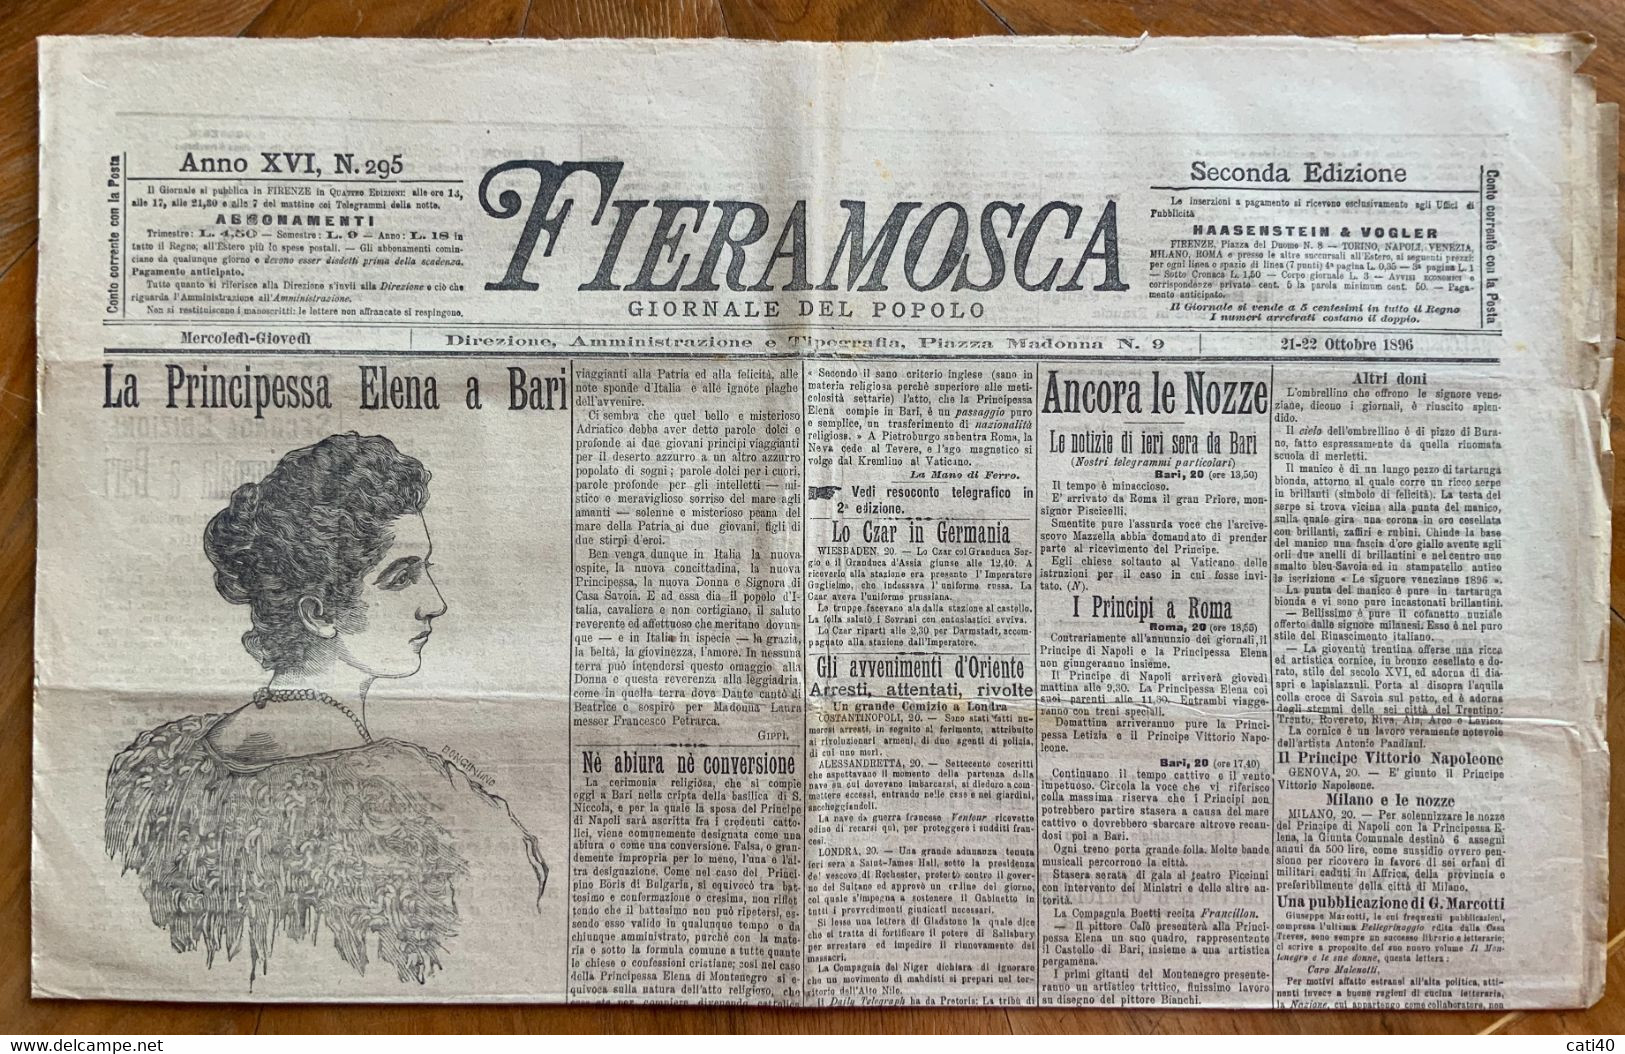 FIERAMOSCA GIORNALE DEL POPOLO Del 21-22/10/1896  : LA PRINCIPESSA ELENA A BARI ... CON RARE PUBBLICITA' - COMPLETO - First Editions